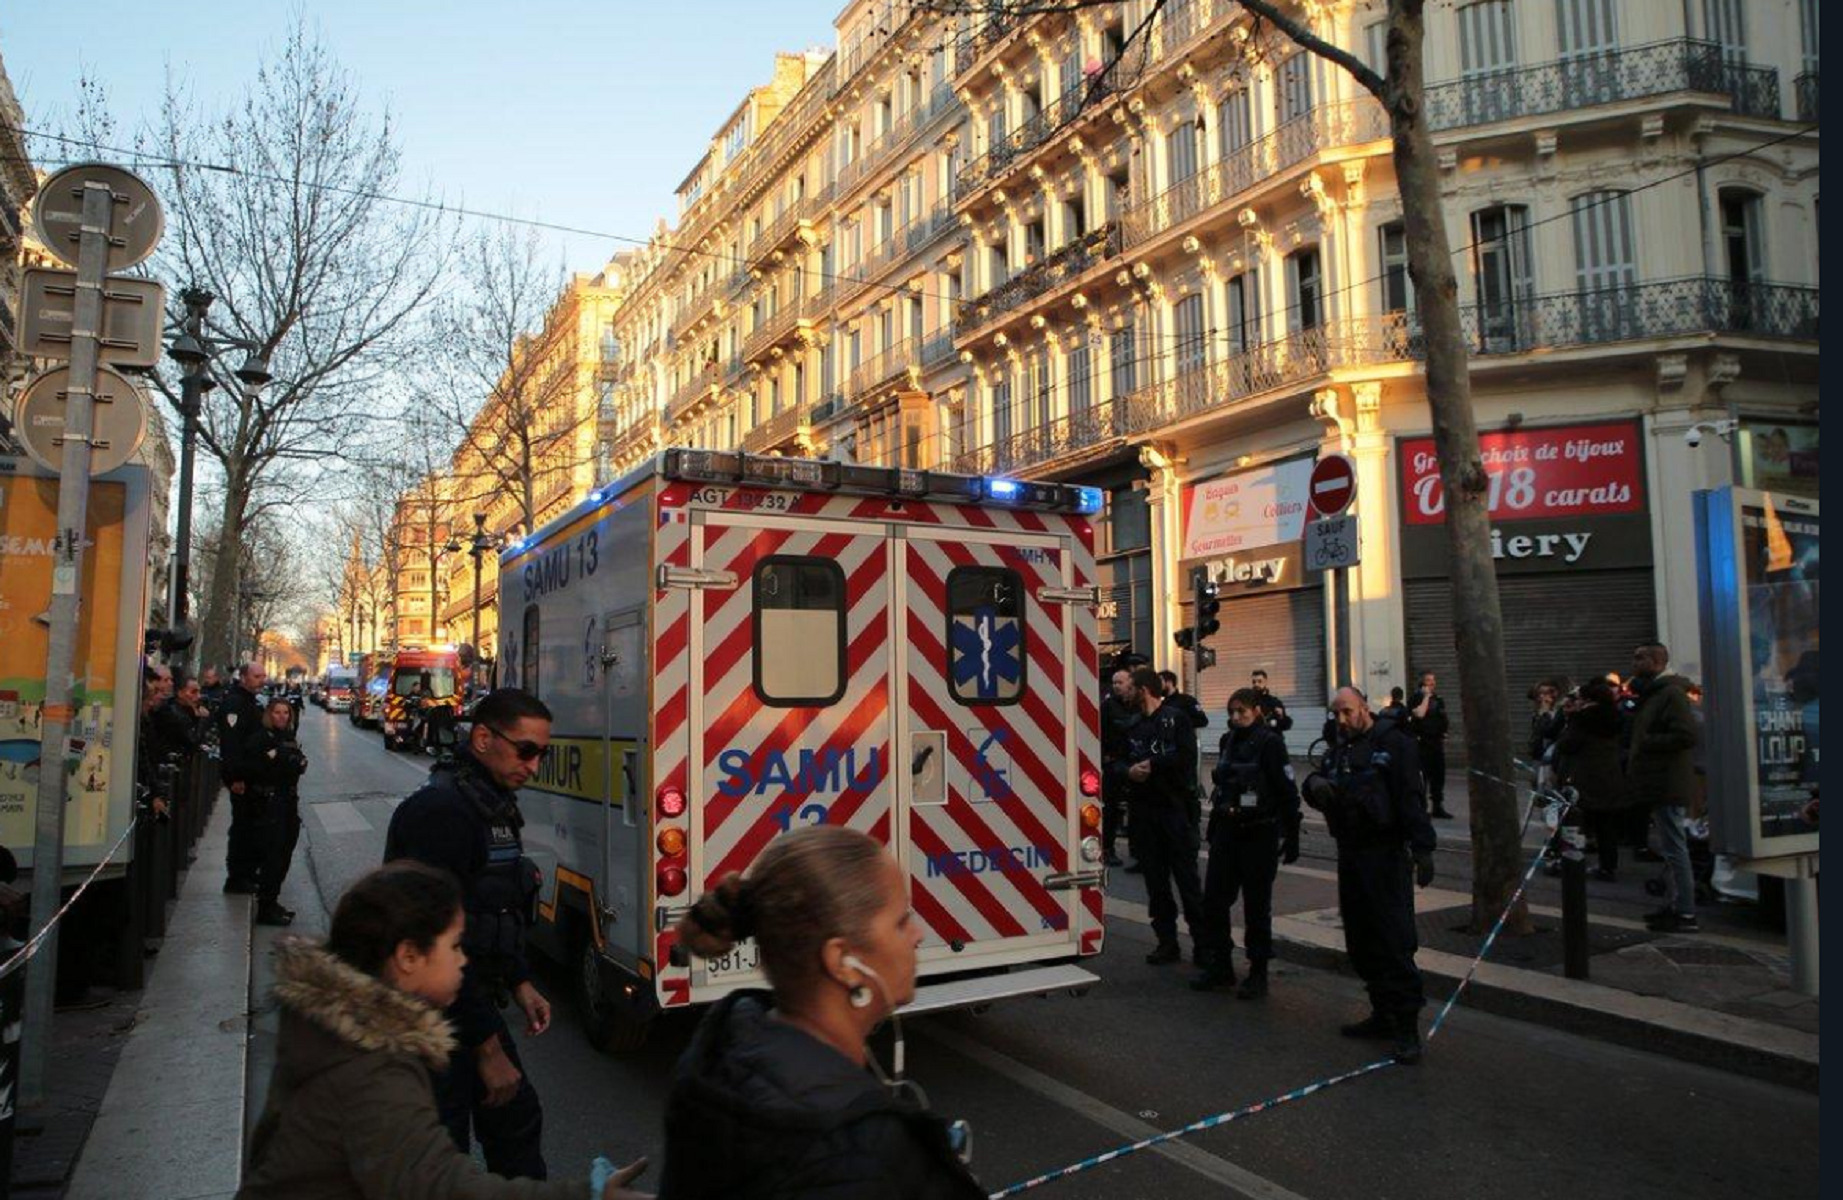 Abaten un home després d'apunyalar diverses persones a Marsella